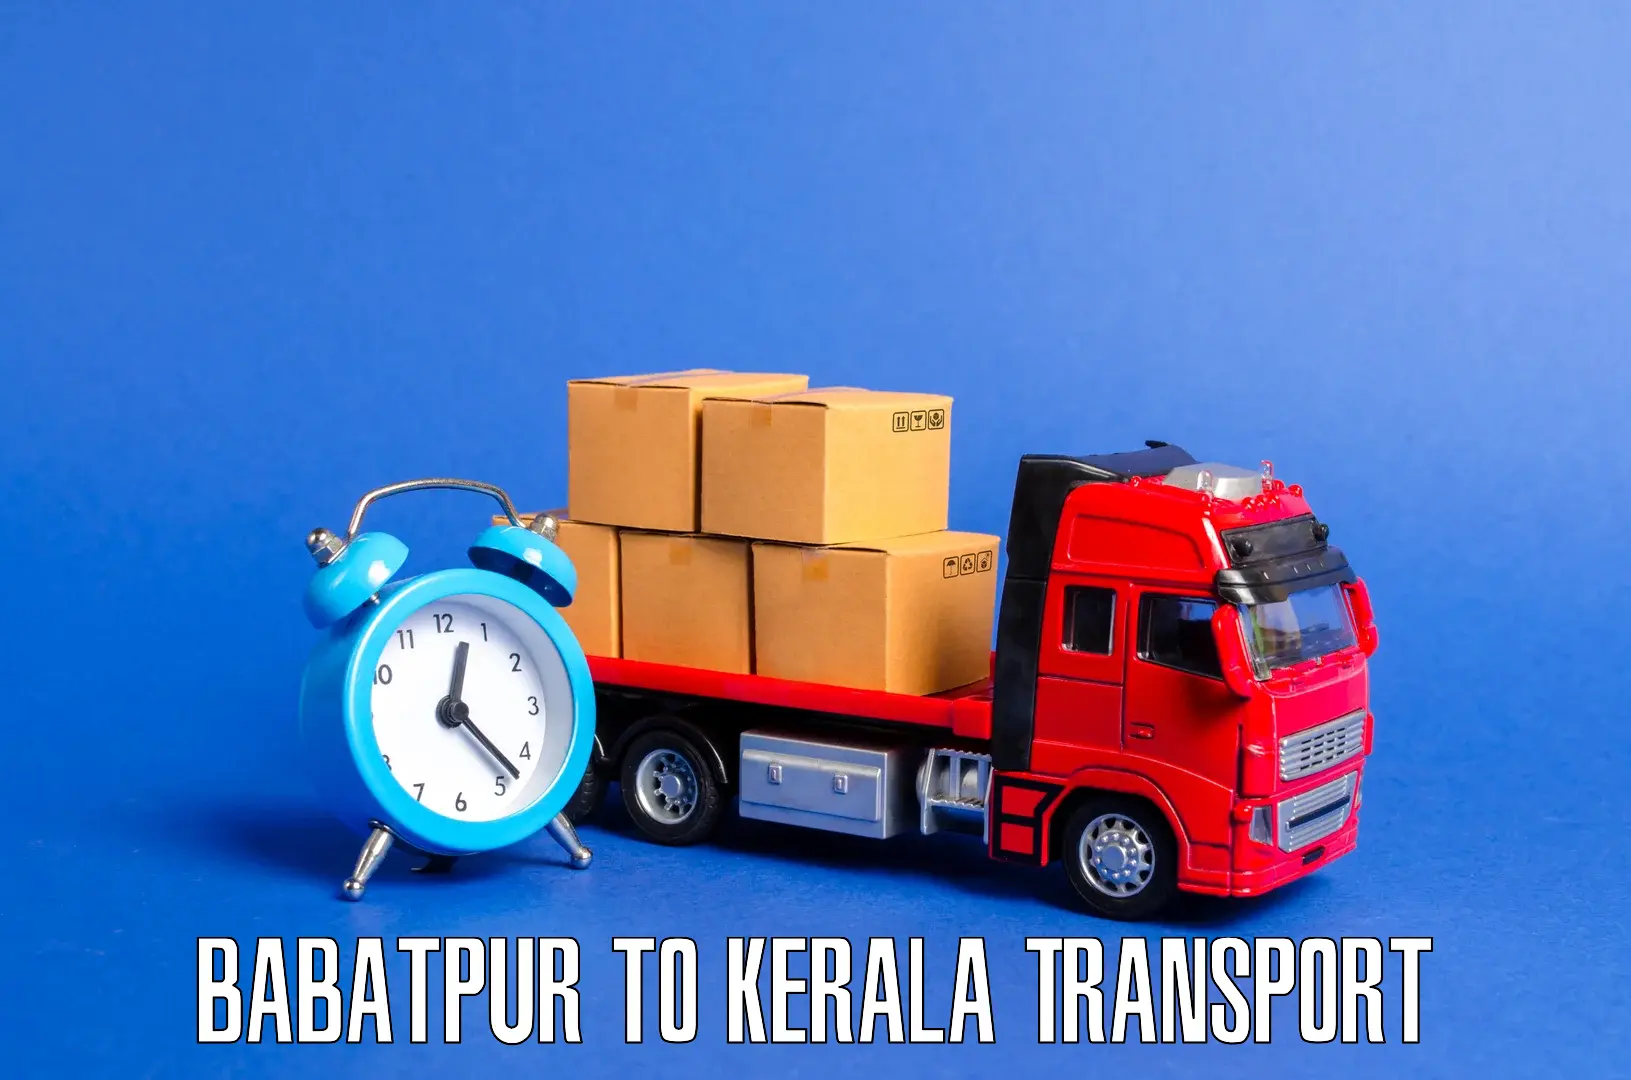 Inland transportation services Babatpur to Manthuka